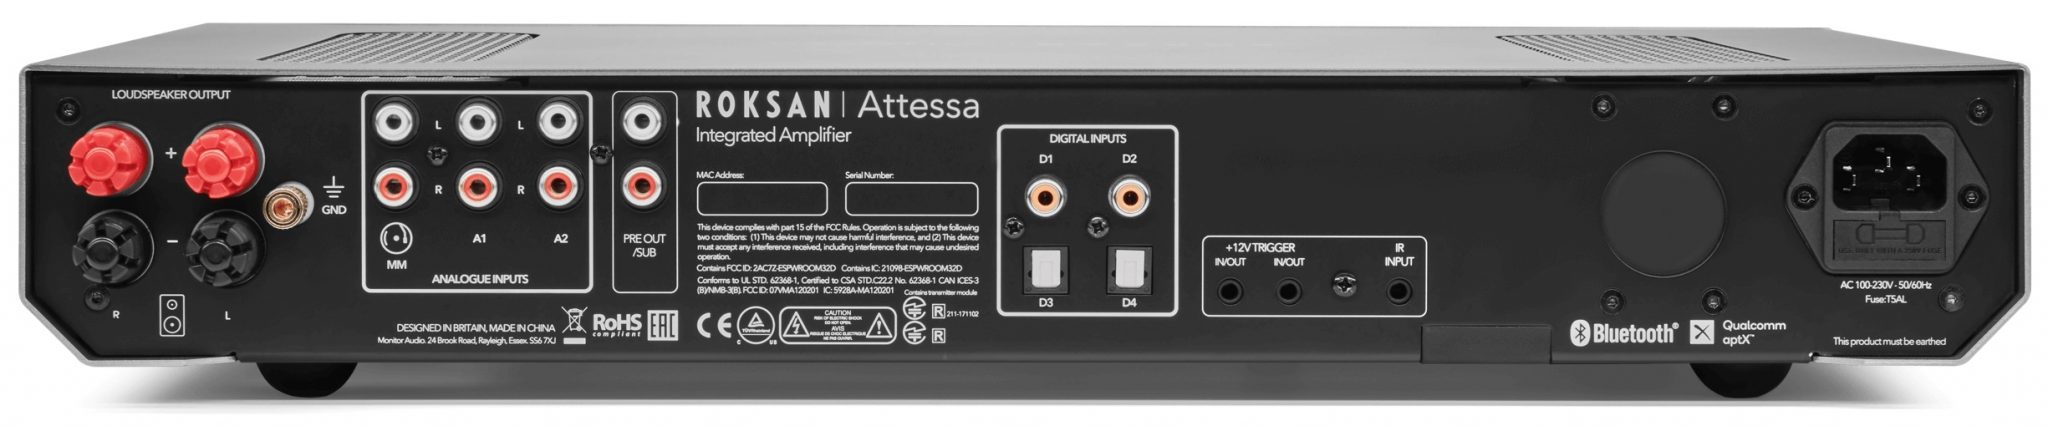 Roksan Attessa Integrated Amp zilver - achterkant - Stereo versterker